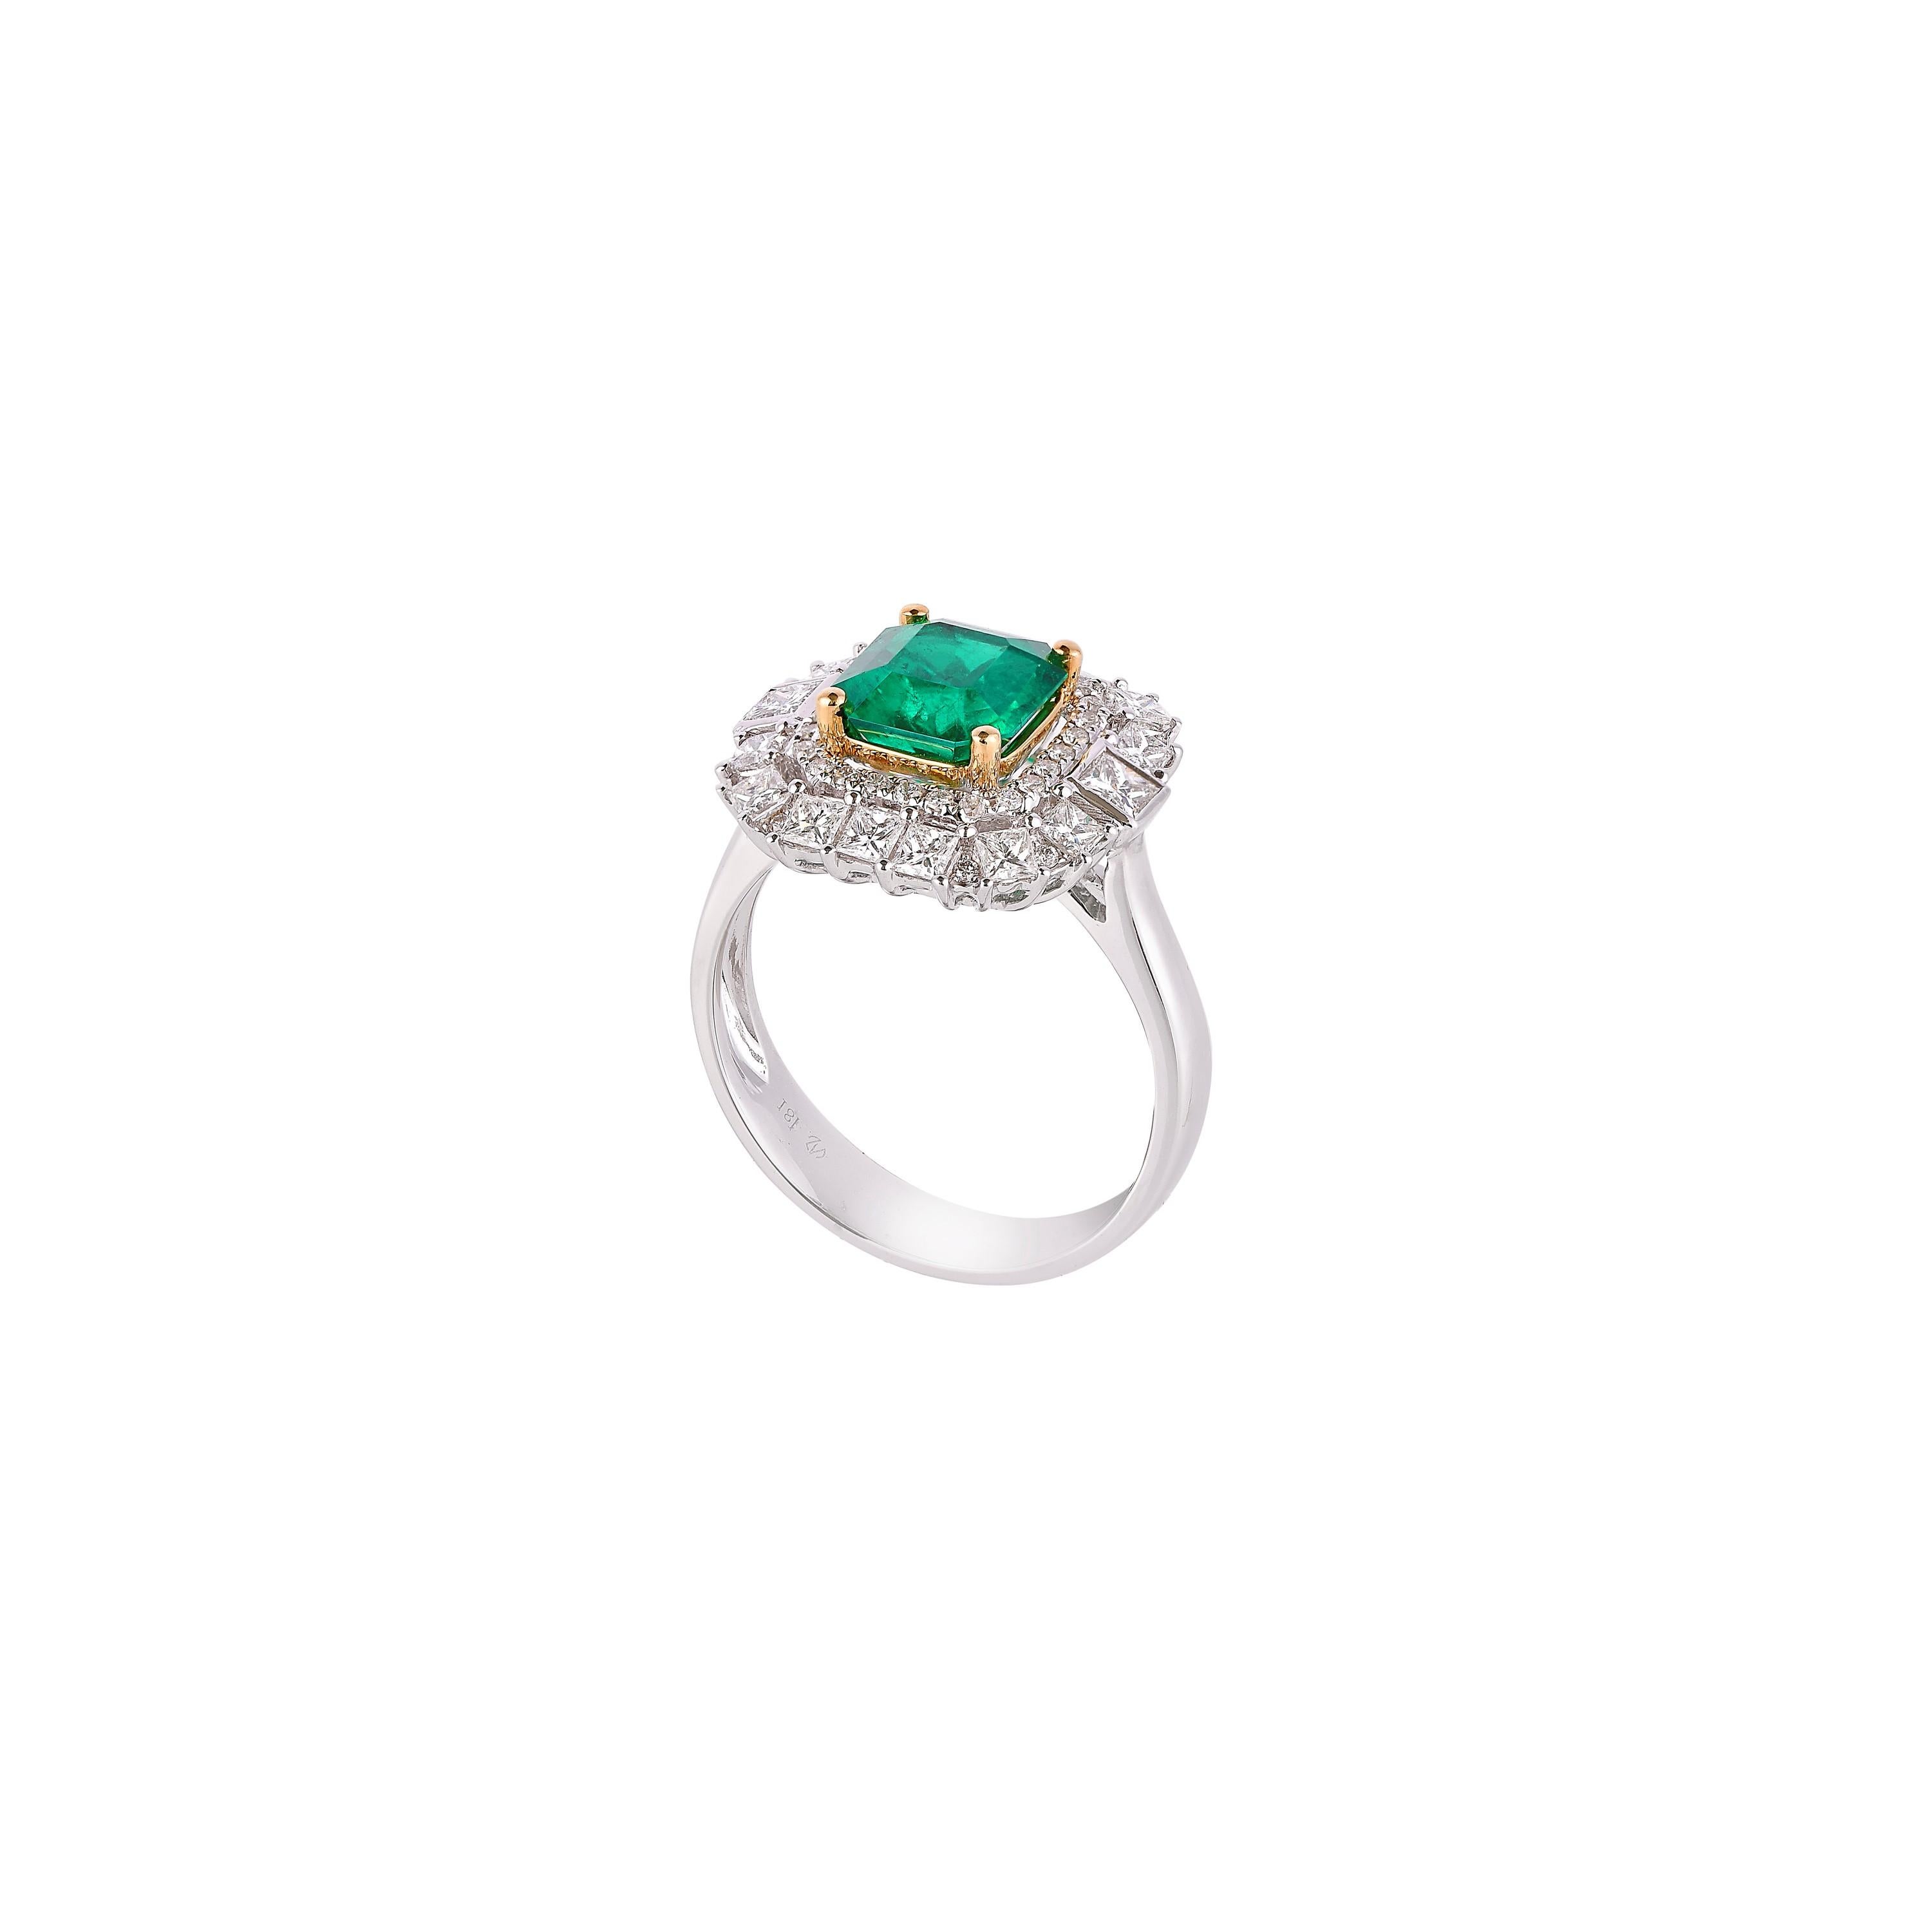 1.7 ct emerald cut diamond